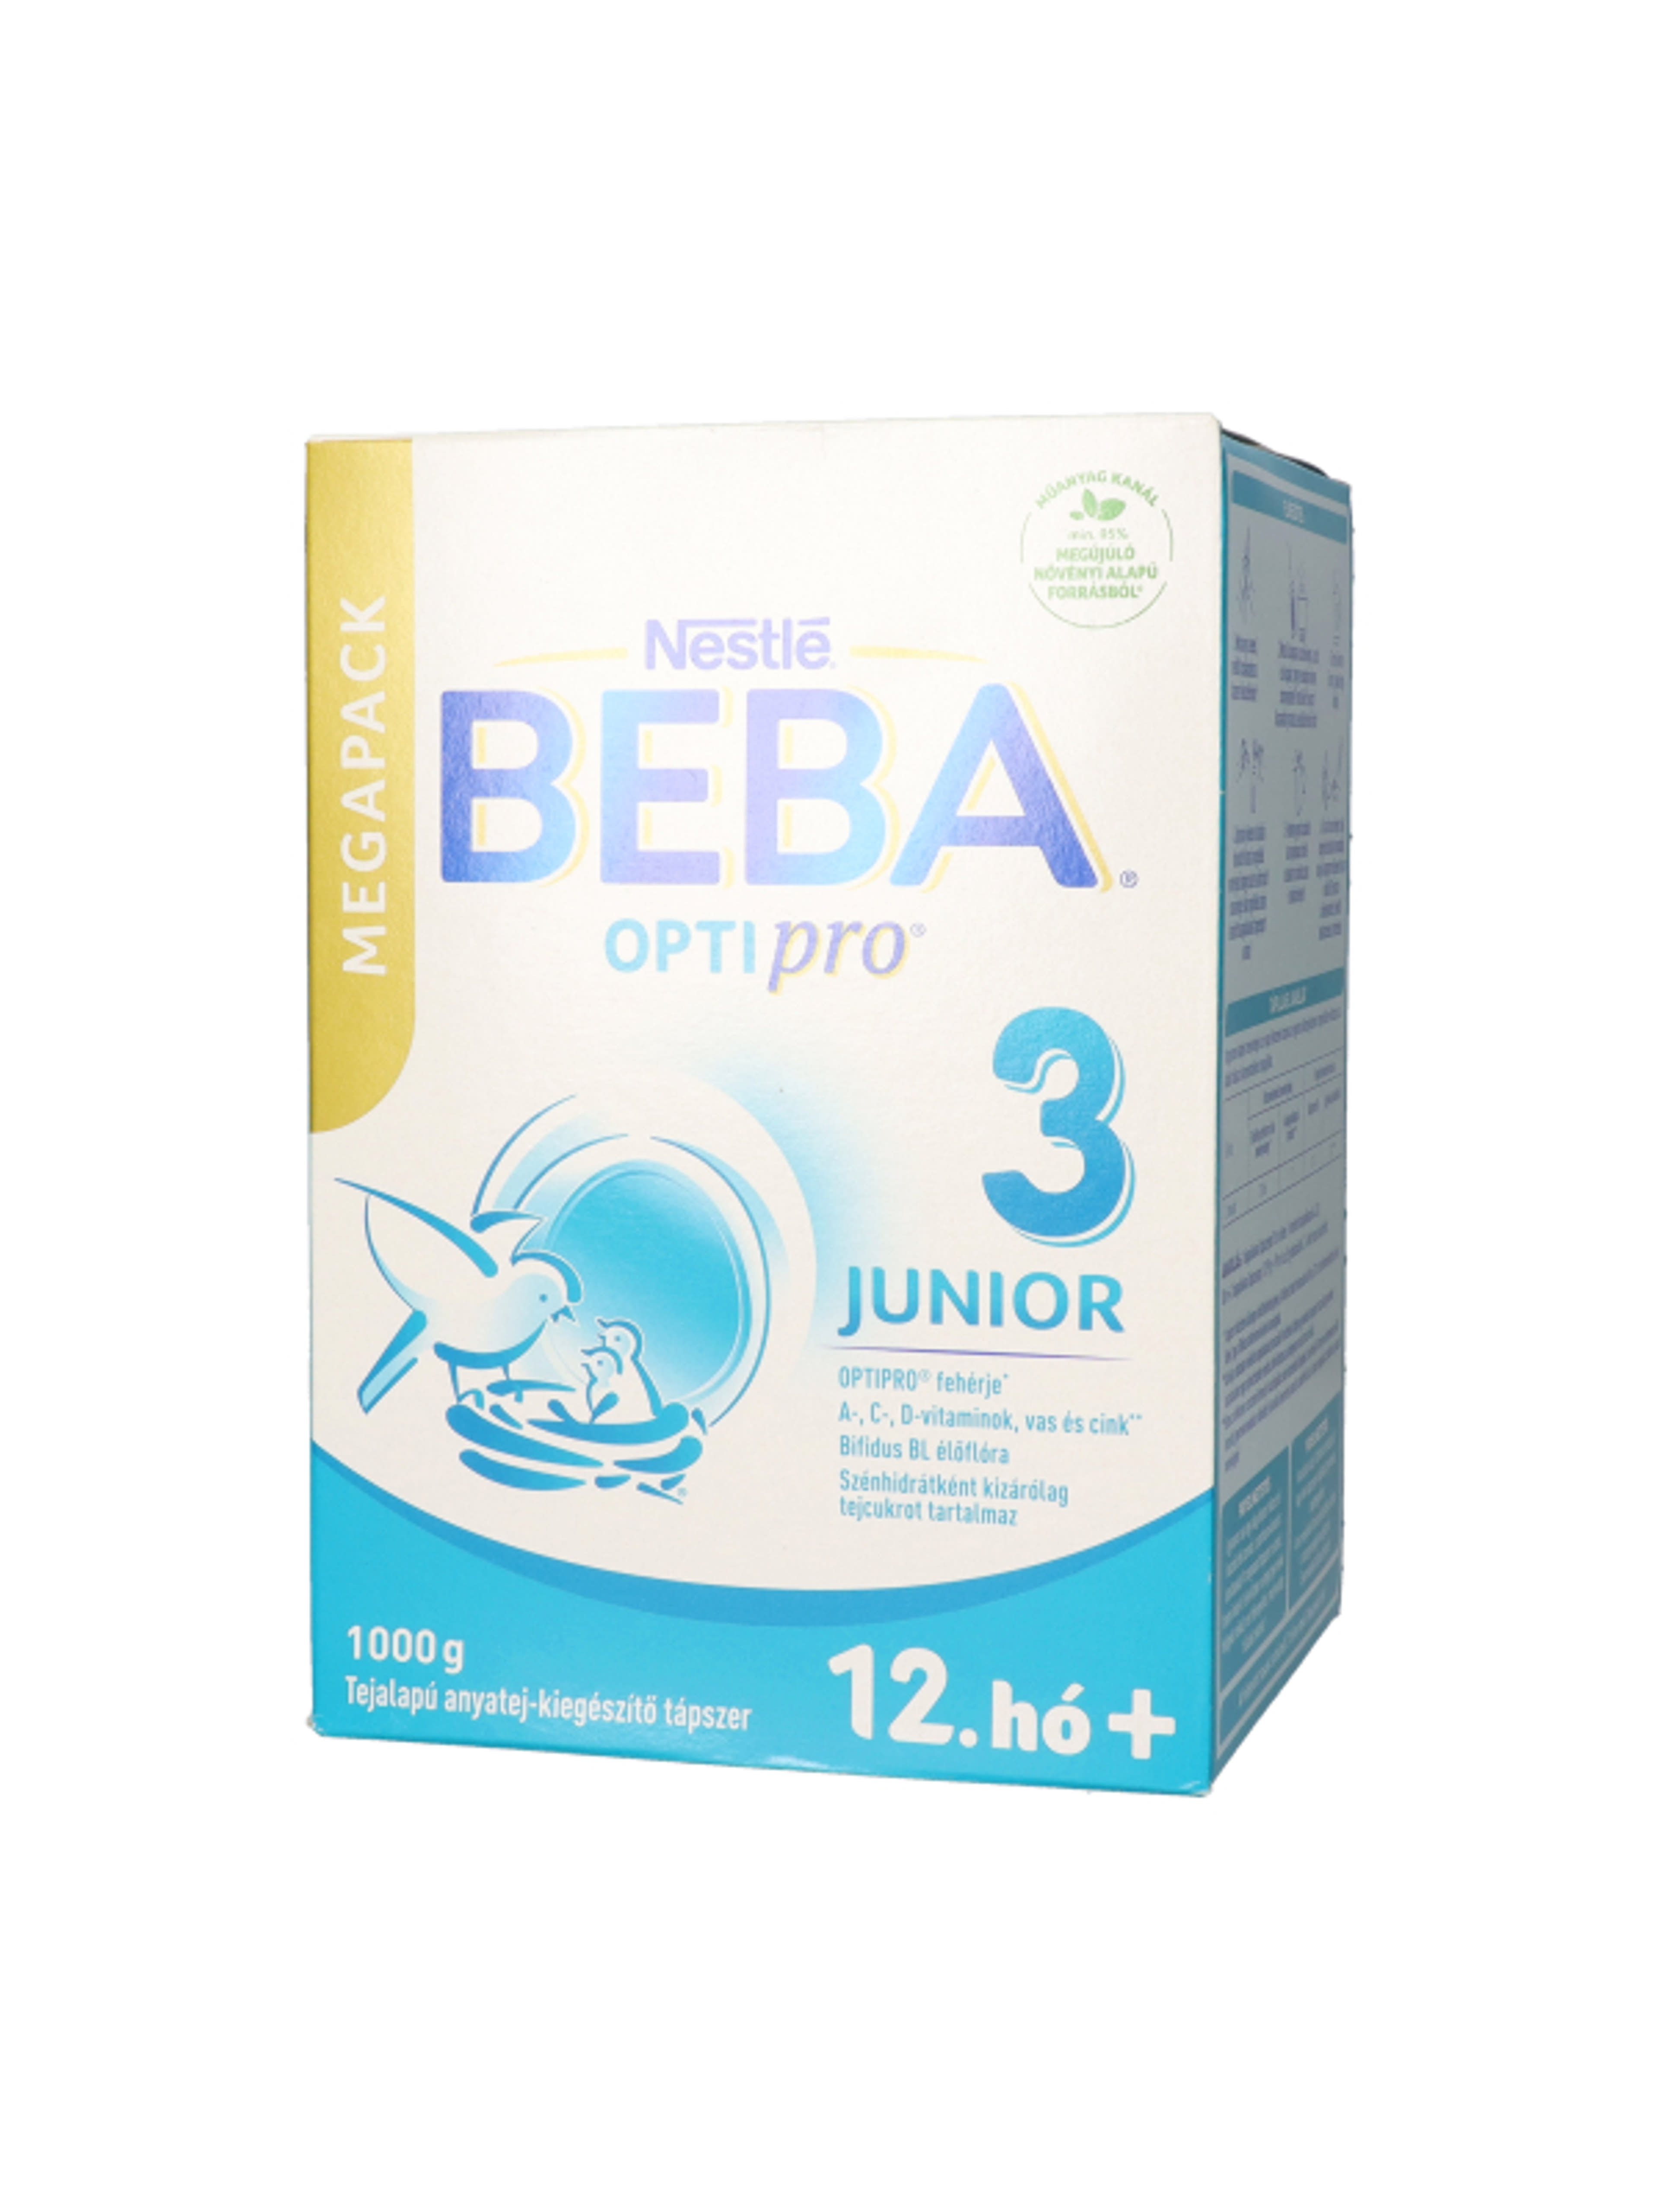 Beba Optipro 3 Junior tejalapú anyatej-kiegészítő tápszer 12. hónapos kortól - 1000 g-5